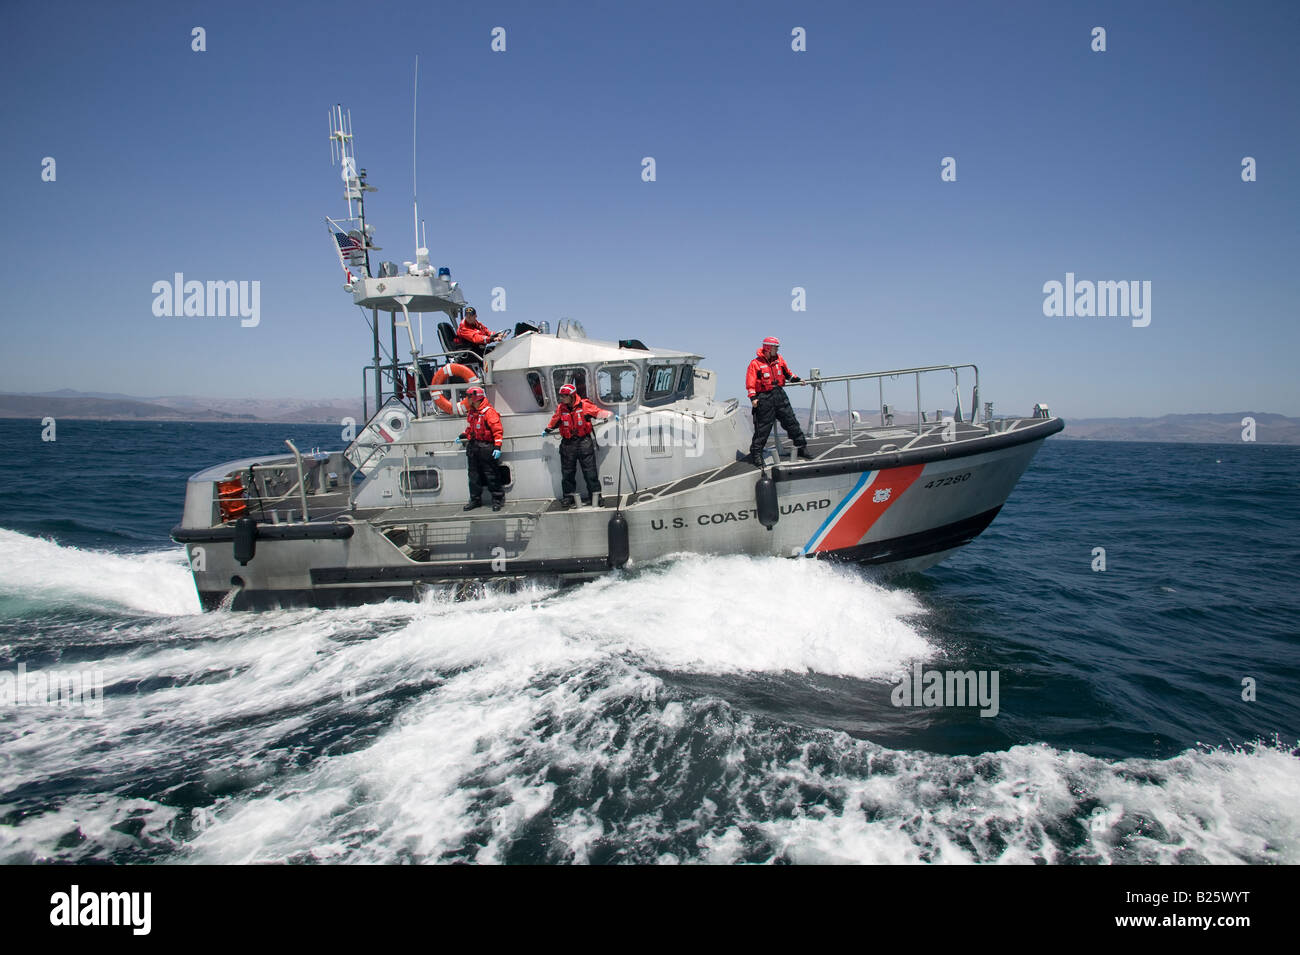 La Guardia Costera de los Estados Unidos prepara a bordo de otro barco Foto de stock